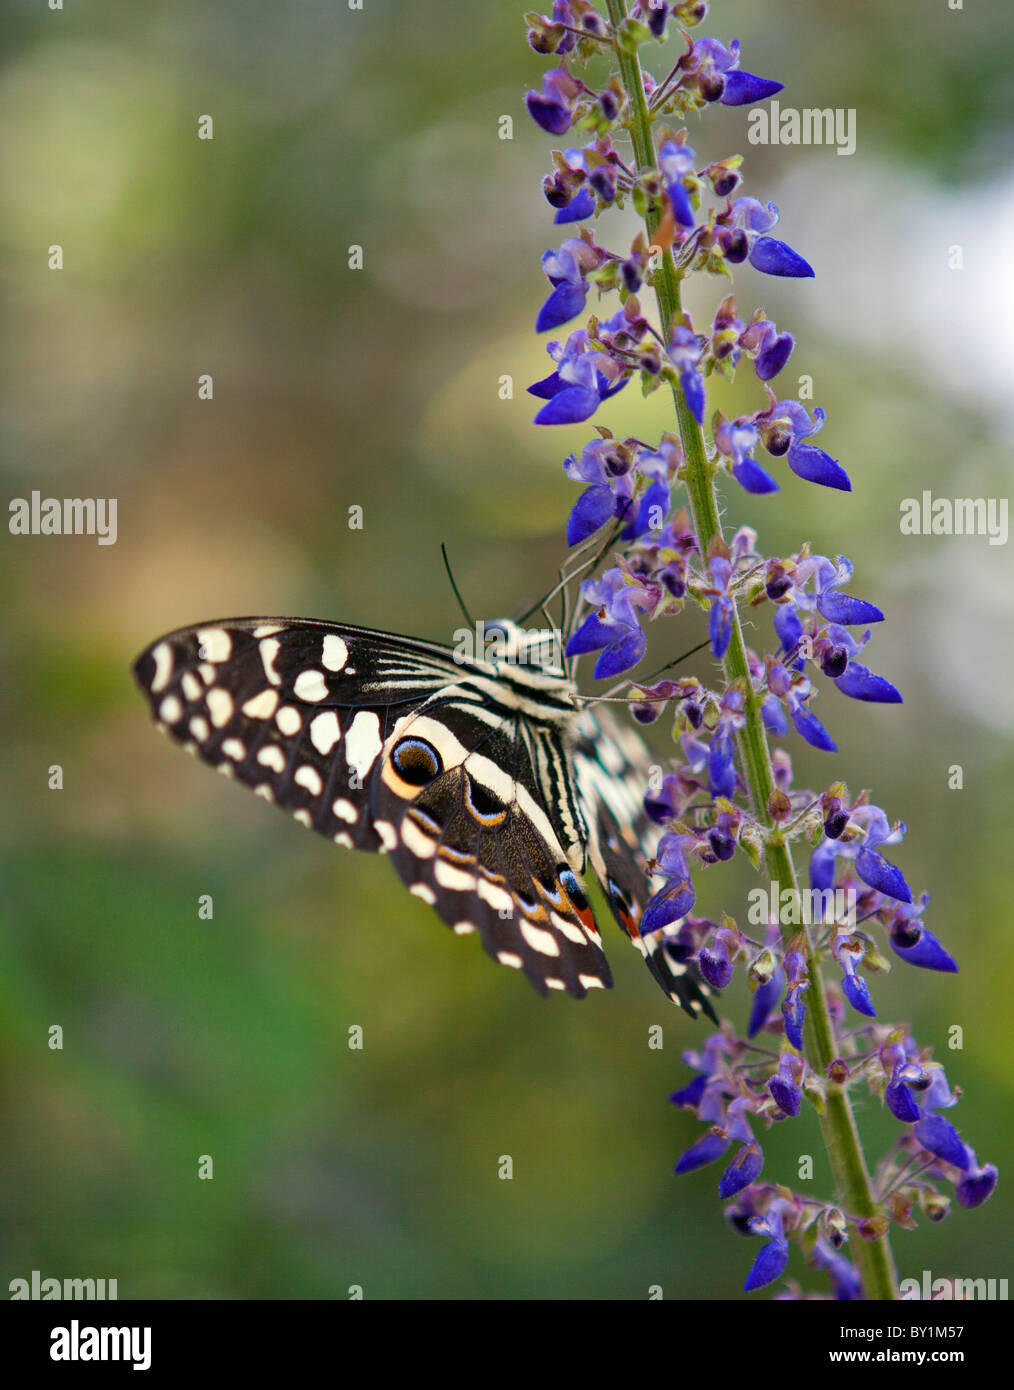 Un papillon dans la réserve naturelle d'Amani, une zone protégée de 8,380ha situé dans l'Est de l'Arc de la montagnes Usambara. Banque D'Images